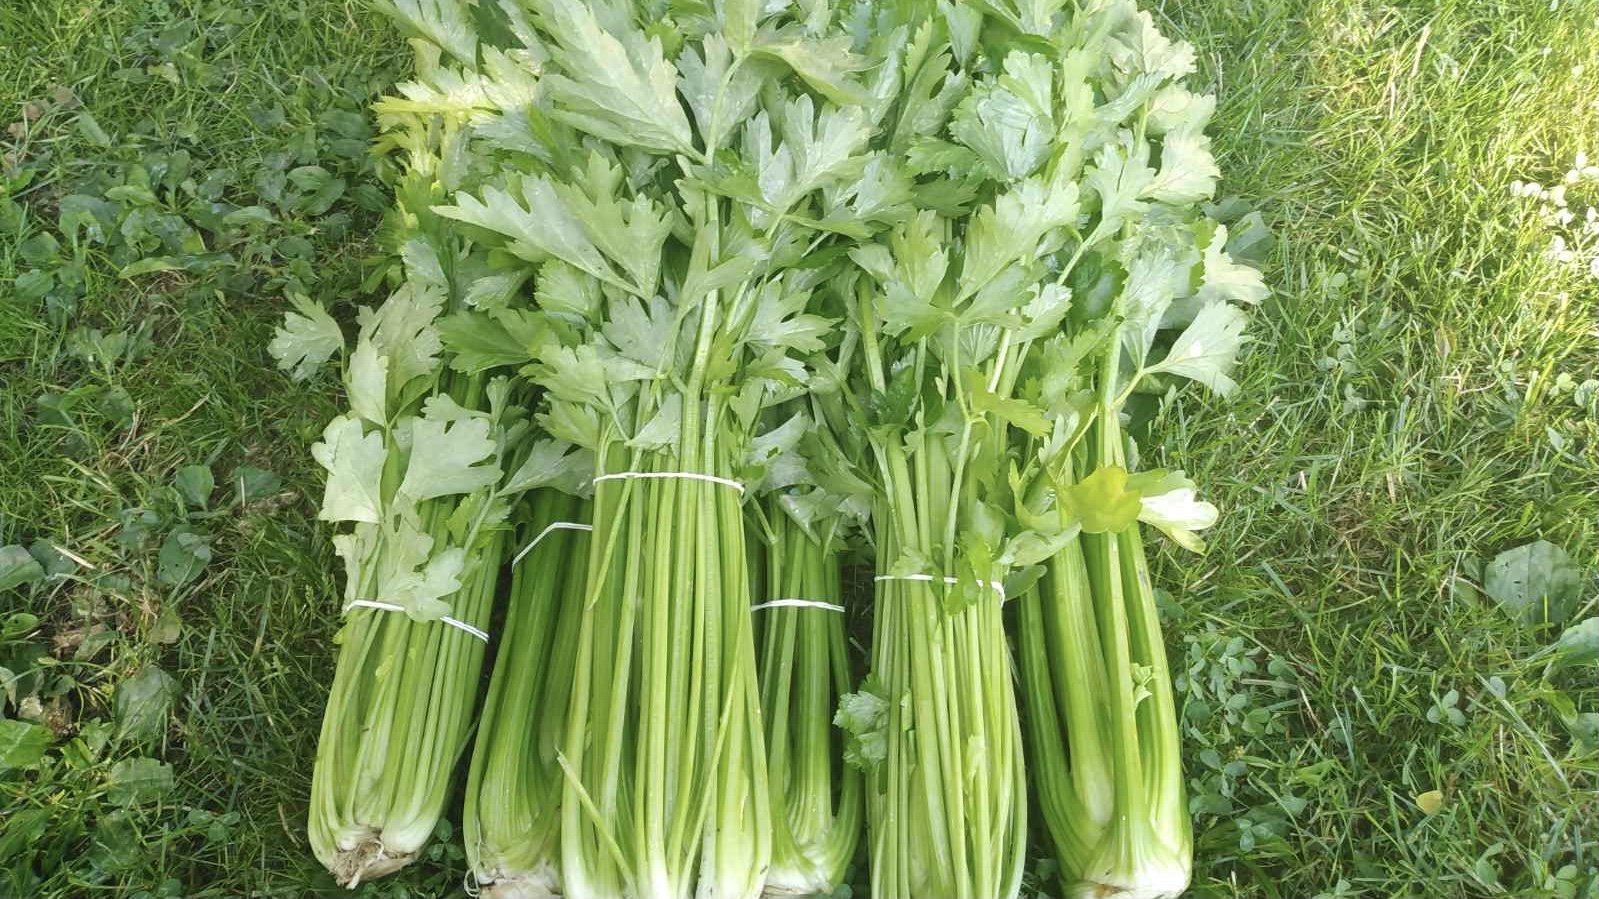 Celer rebraš © Sanja Kuzmanović